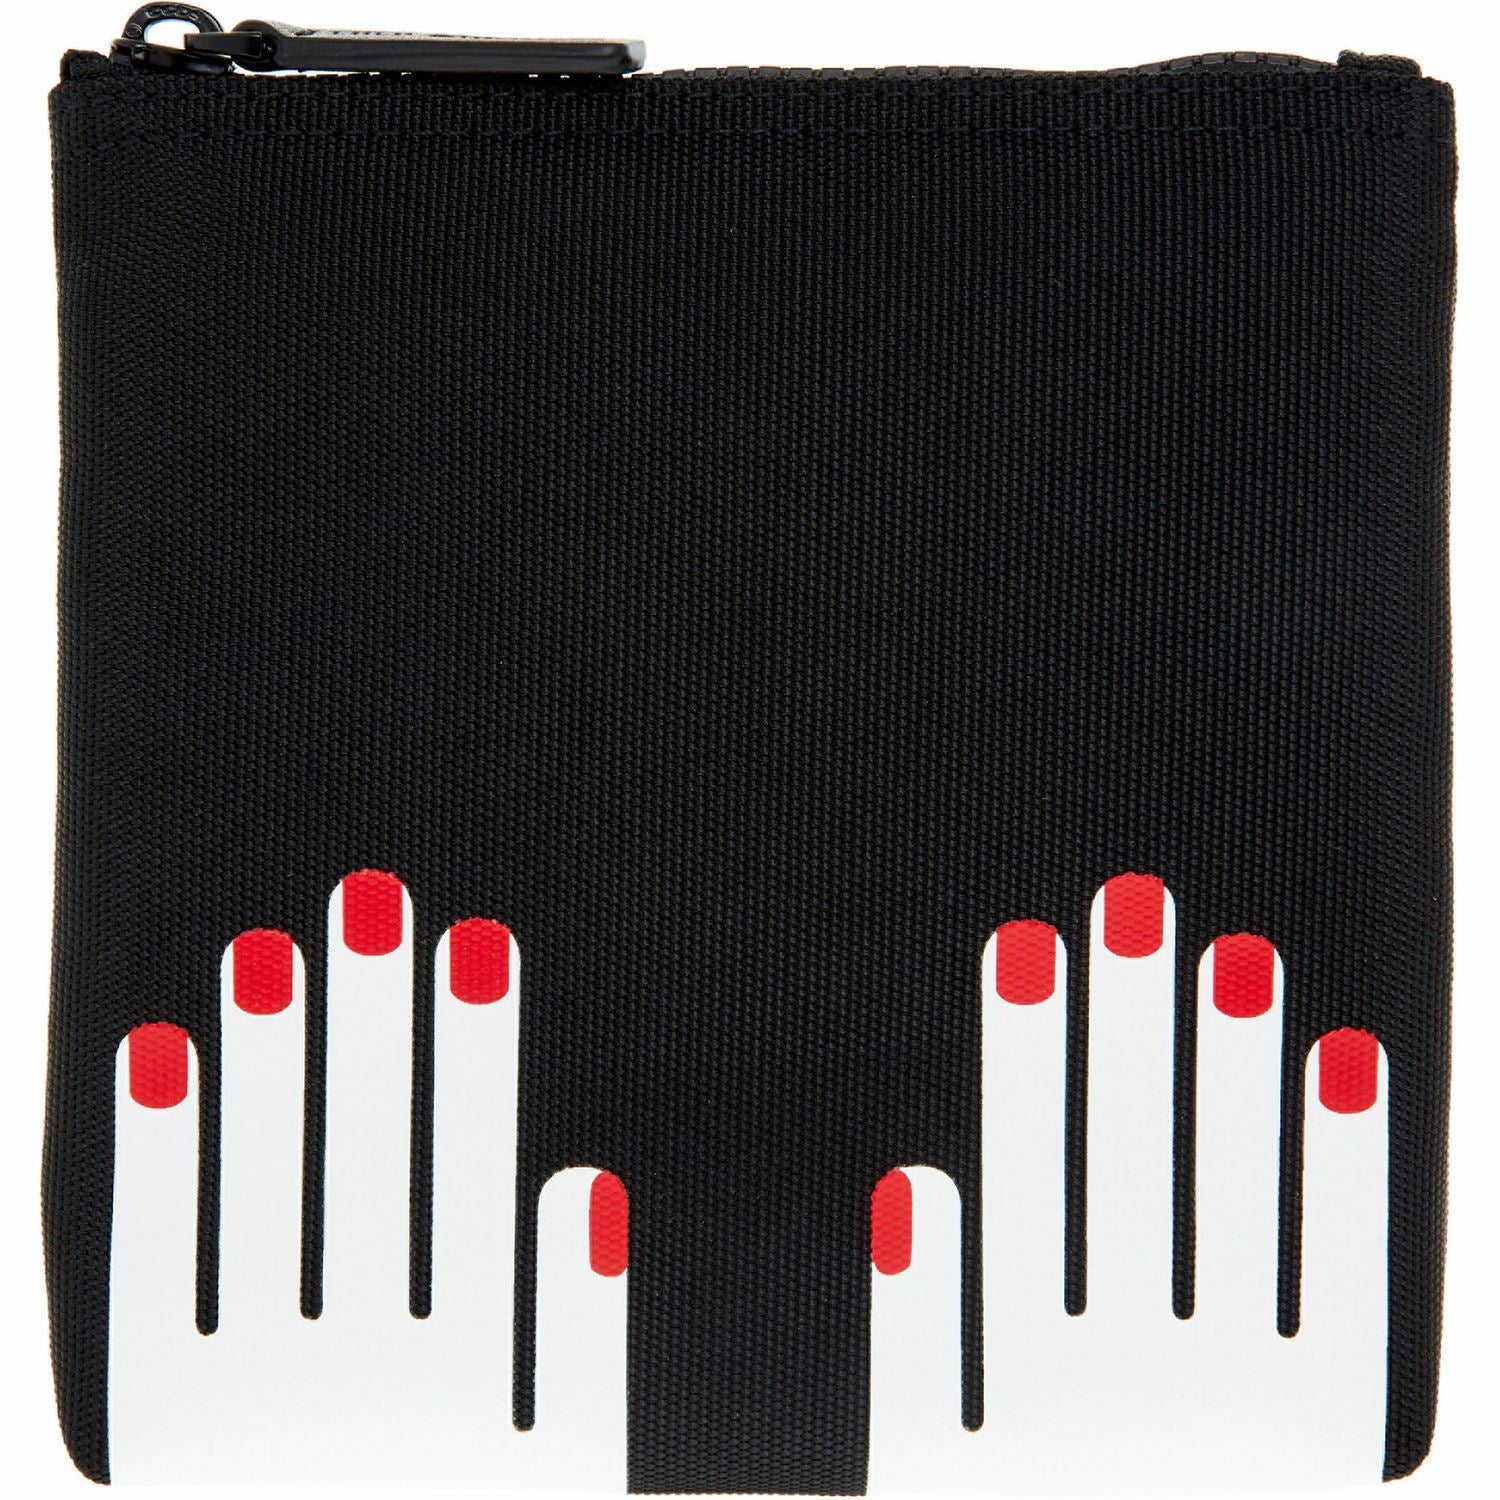 LULU GUINNESS Women's Black & White Hands Print Nylon Zip Pouch Bag